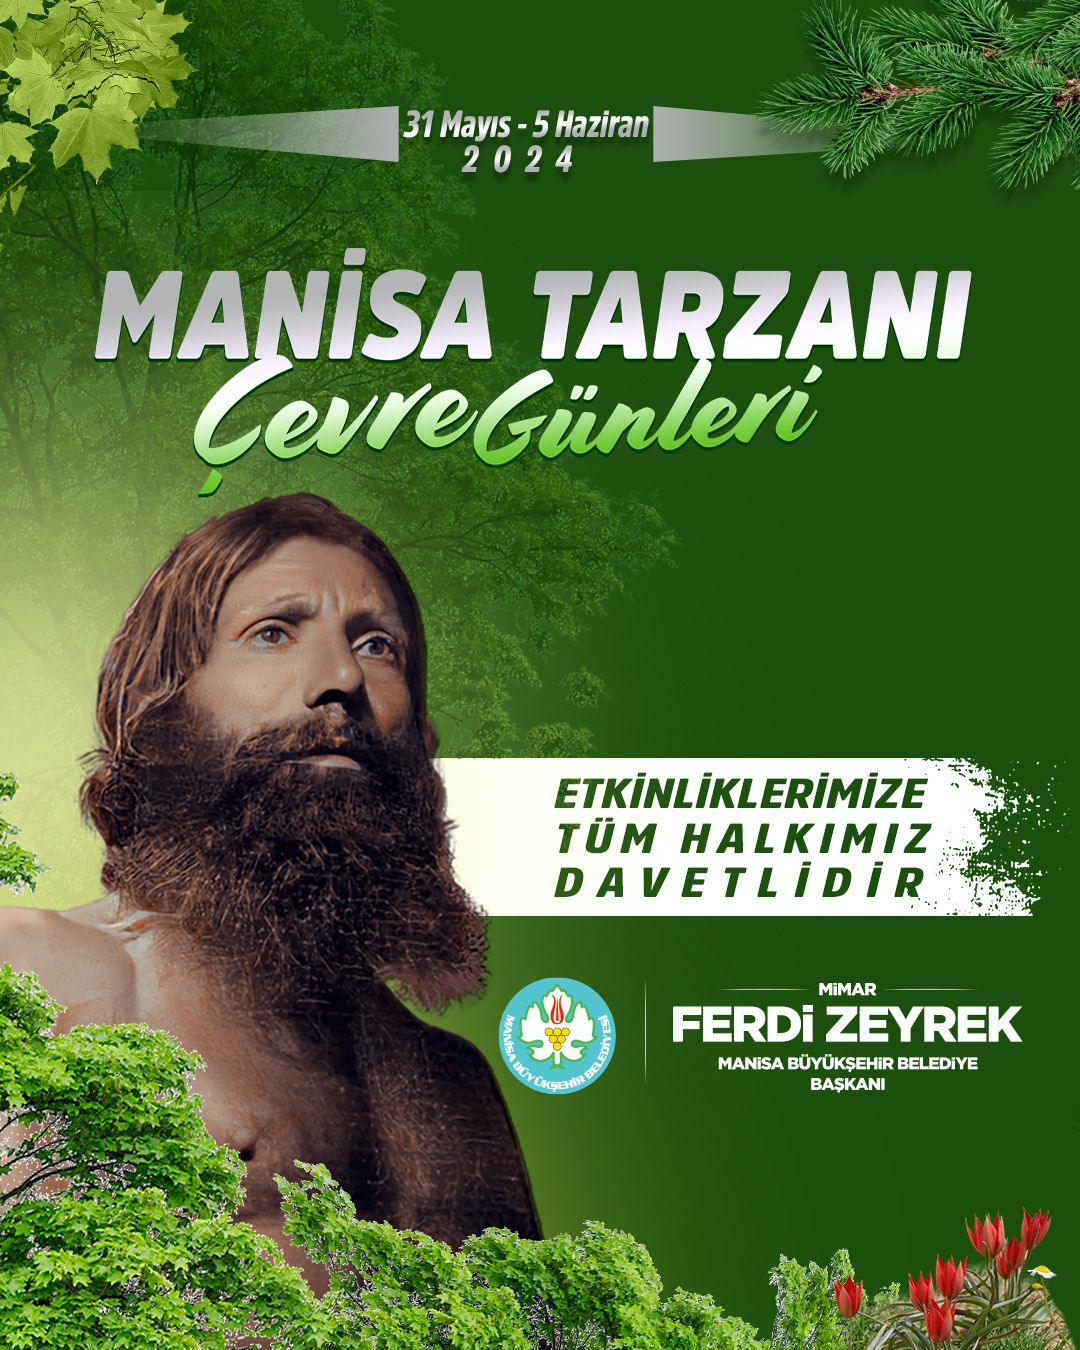 Tarzann Çevre (2)